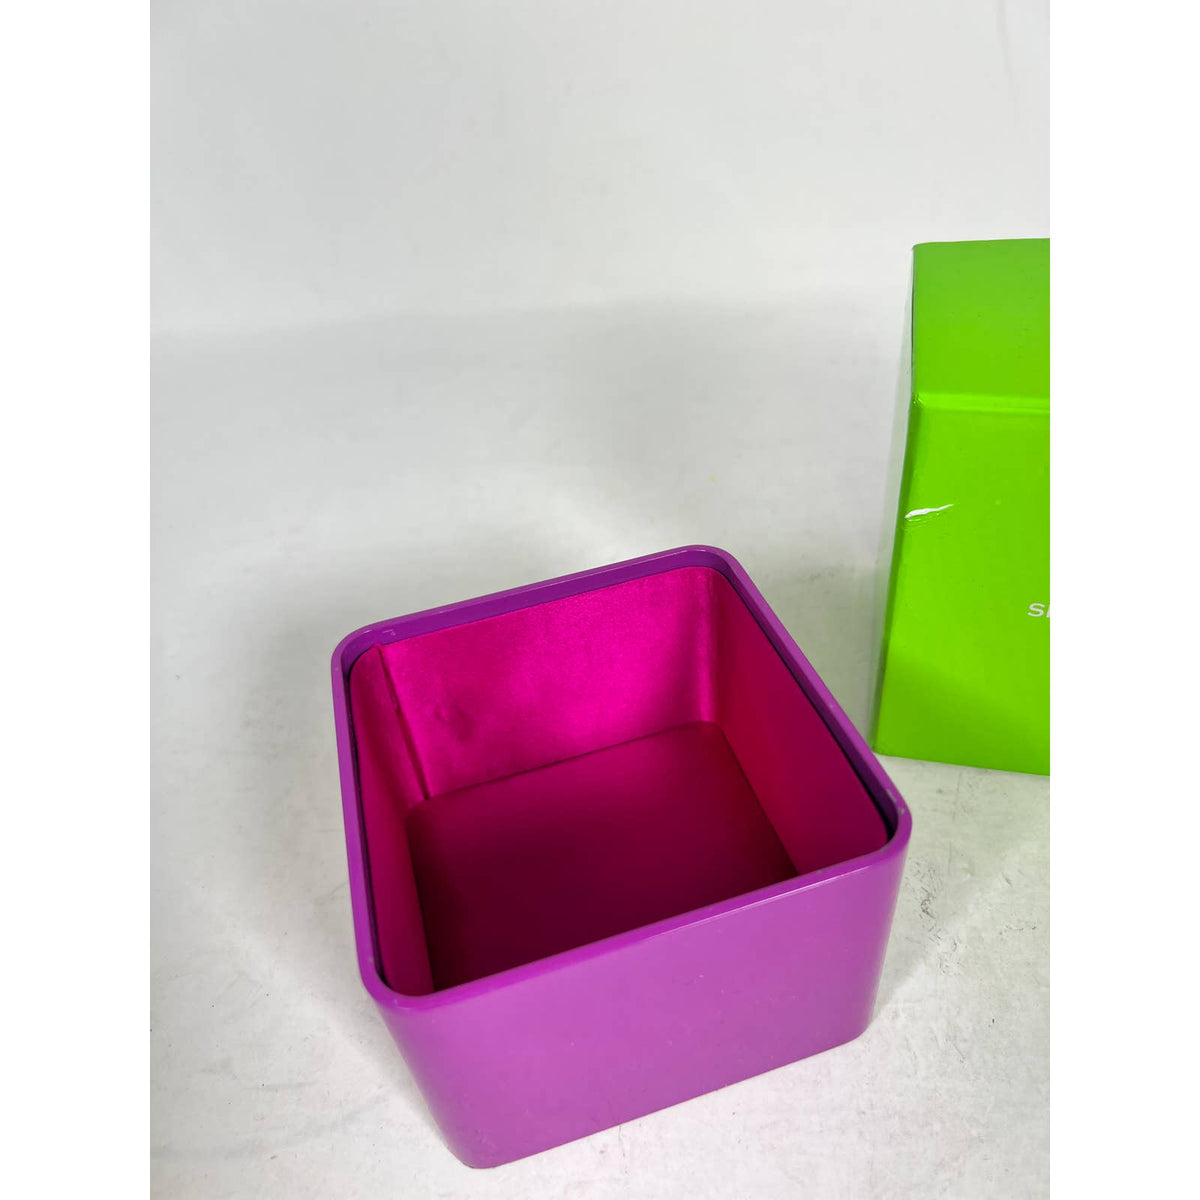 Shanghai Tang Purple Trinket Box